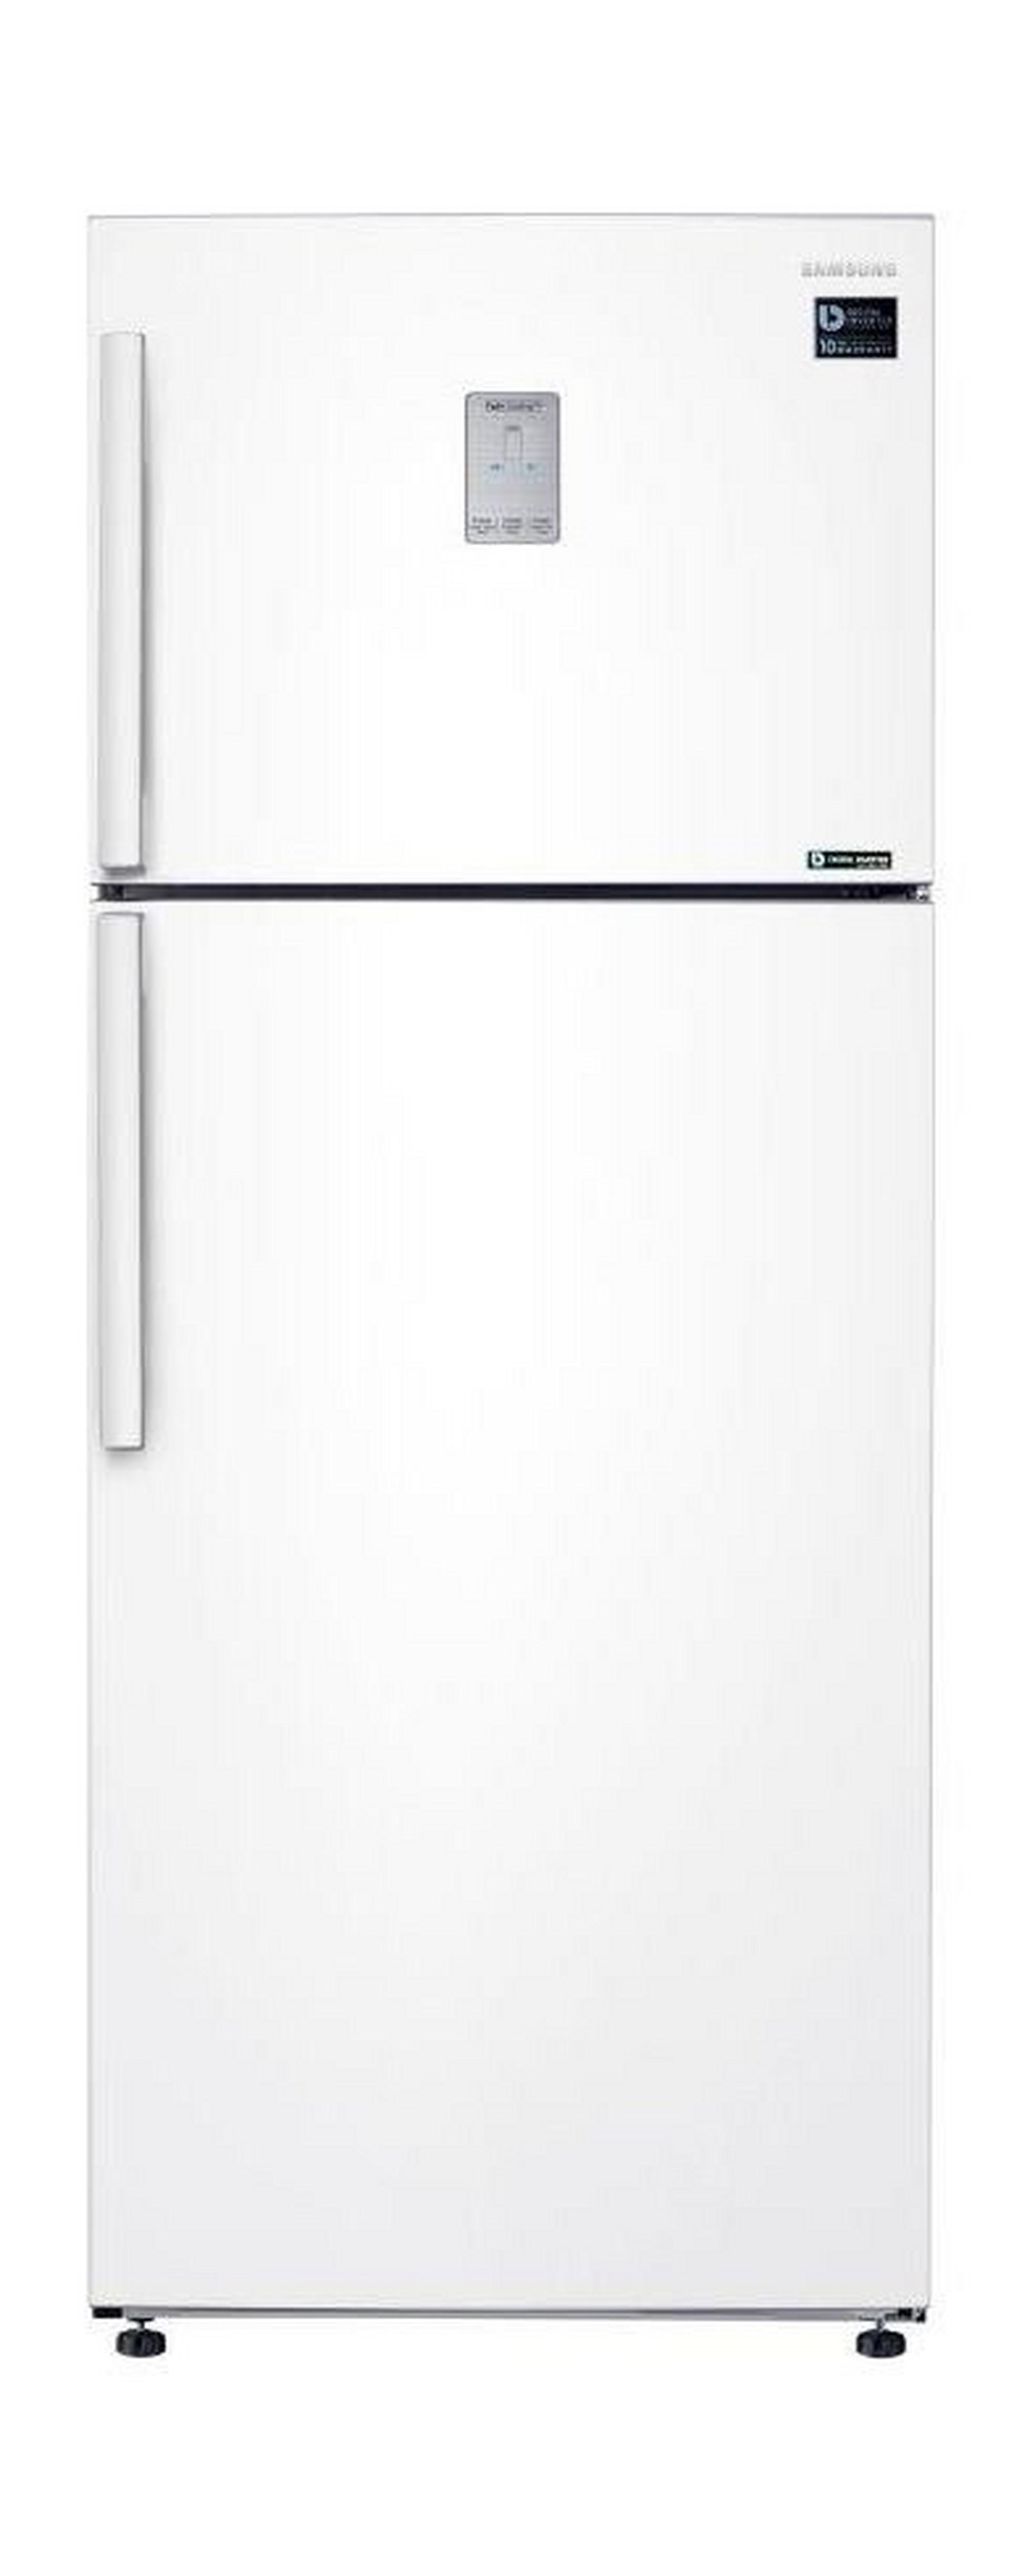 Samsung 15.4 Cft. Top Mount Refrigerator (RT43K6300WW) - White